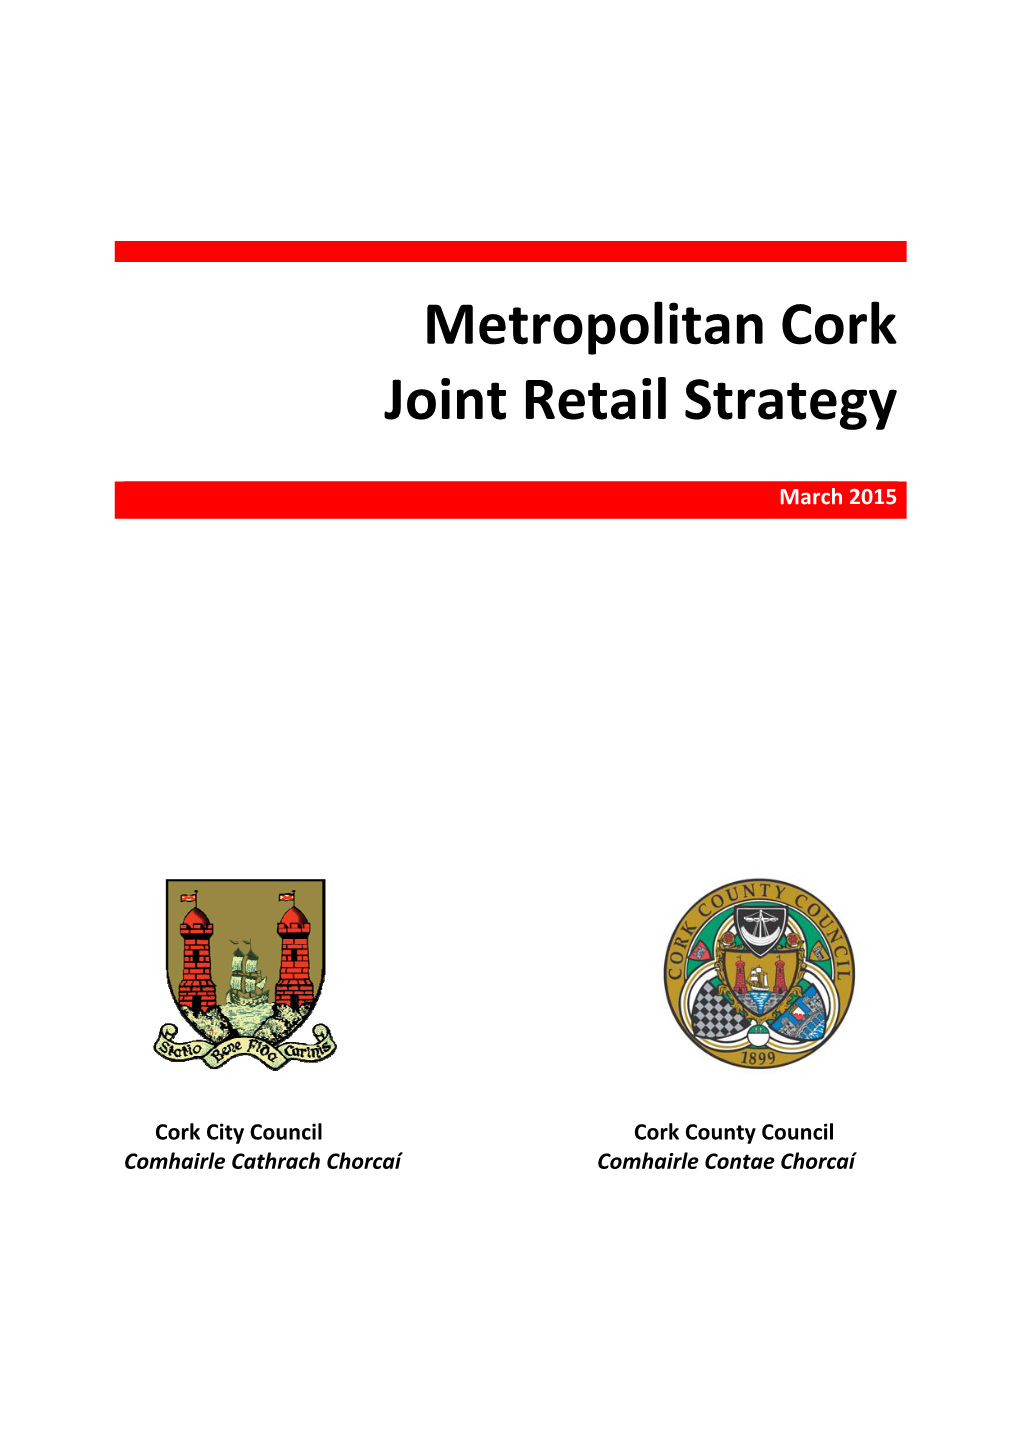 Metropolitan Cork Joint Retail Strategy